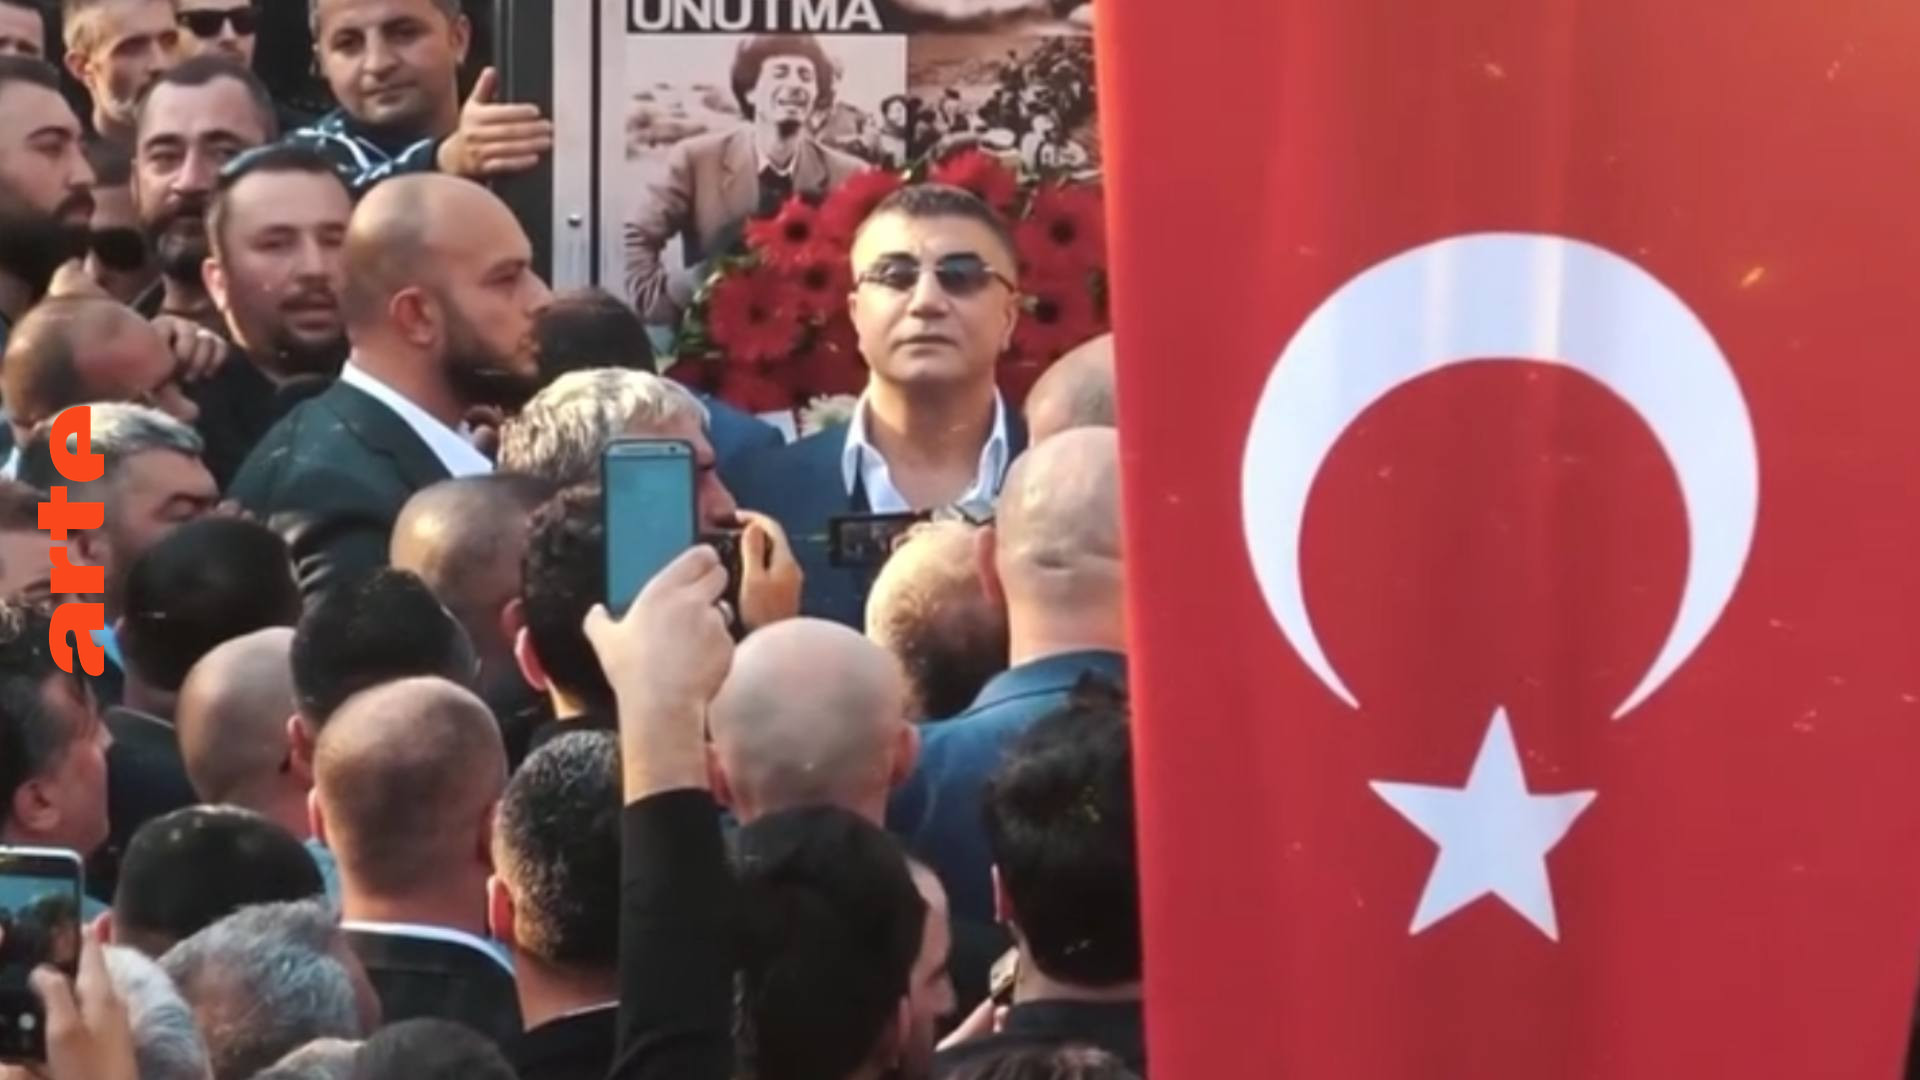 Türkei: Die Regierung zittert vor Enthüllungsvideos